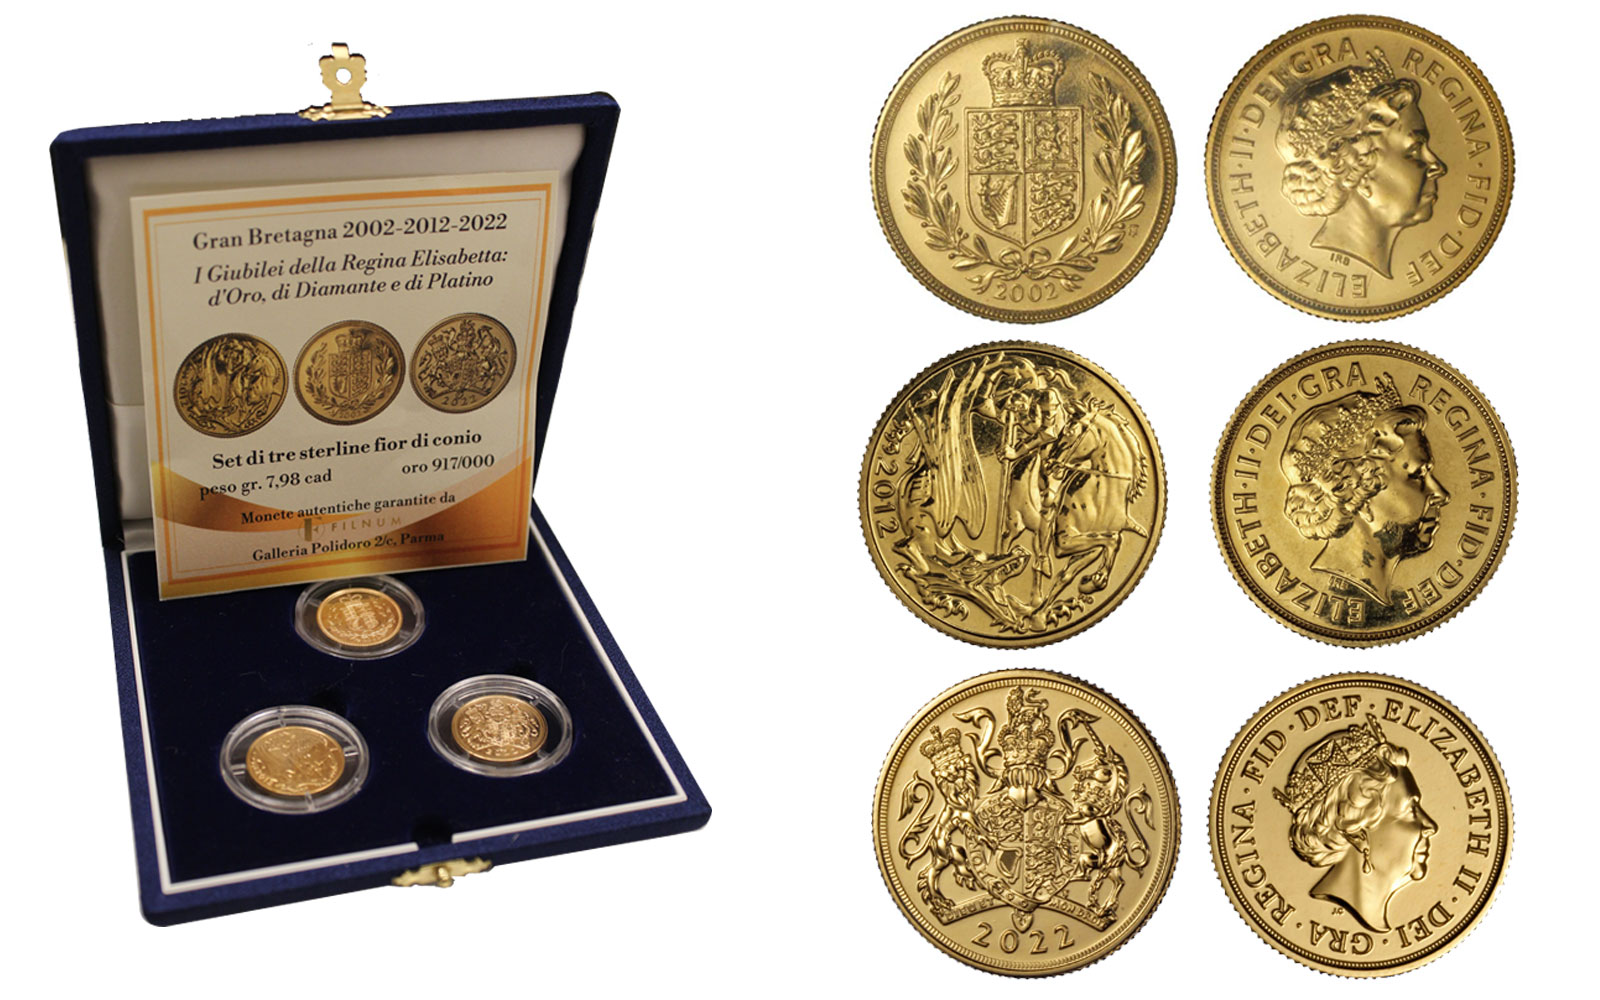 "I Giubilei della Regina Elisabetta: d'Oro, di Diamante e di Platino" - Set di tre sterline fior di conio gr. 7,98 in oro 917/000